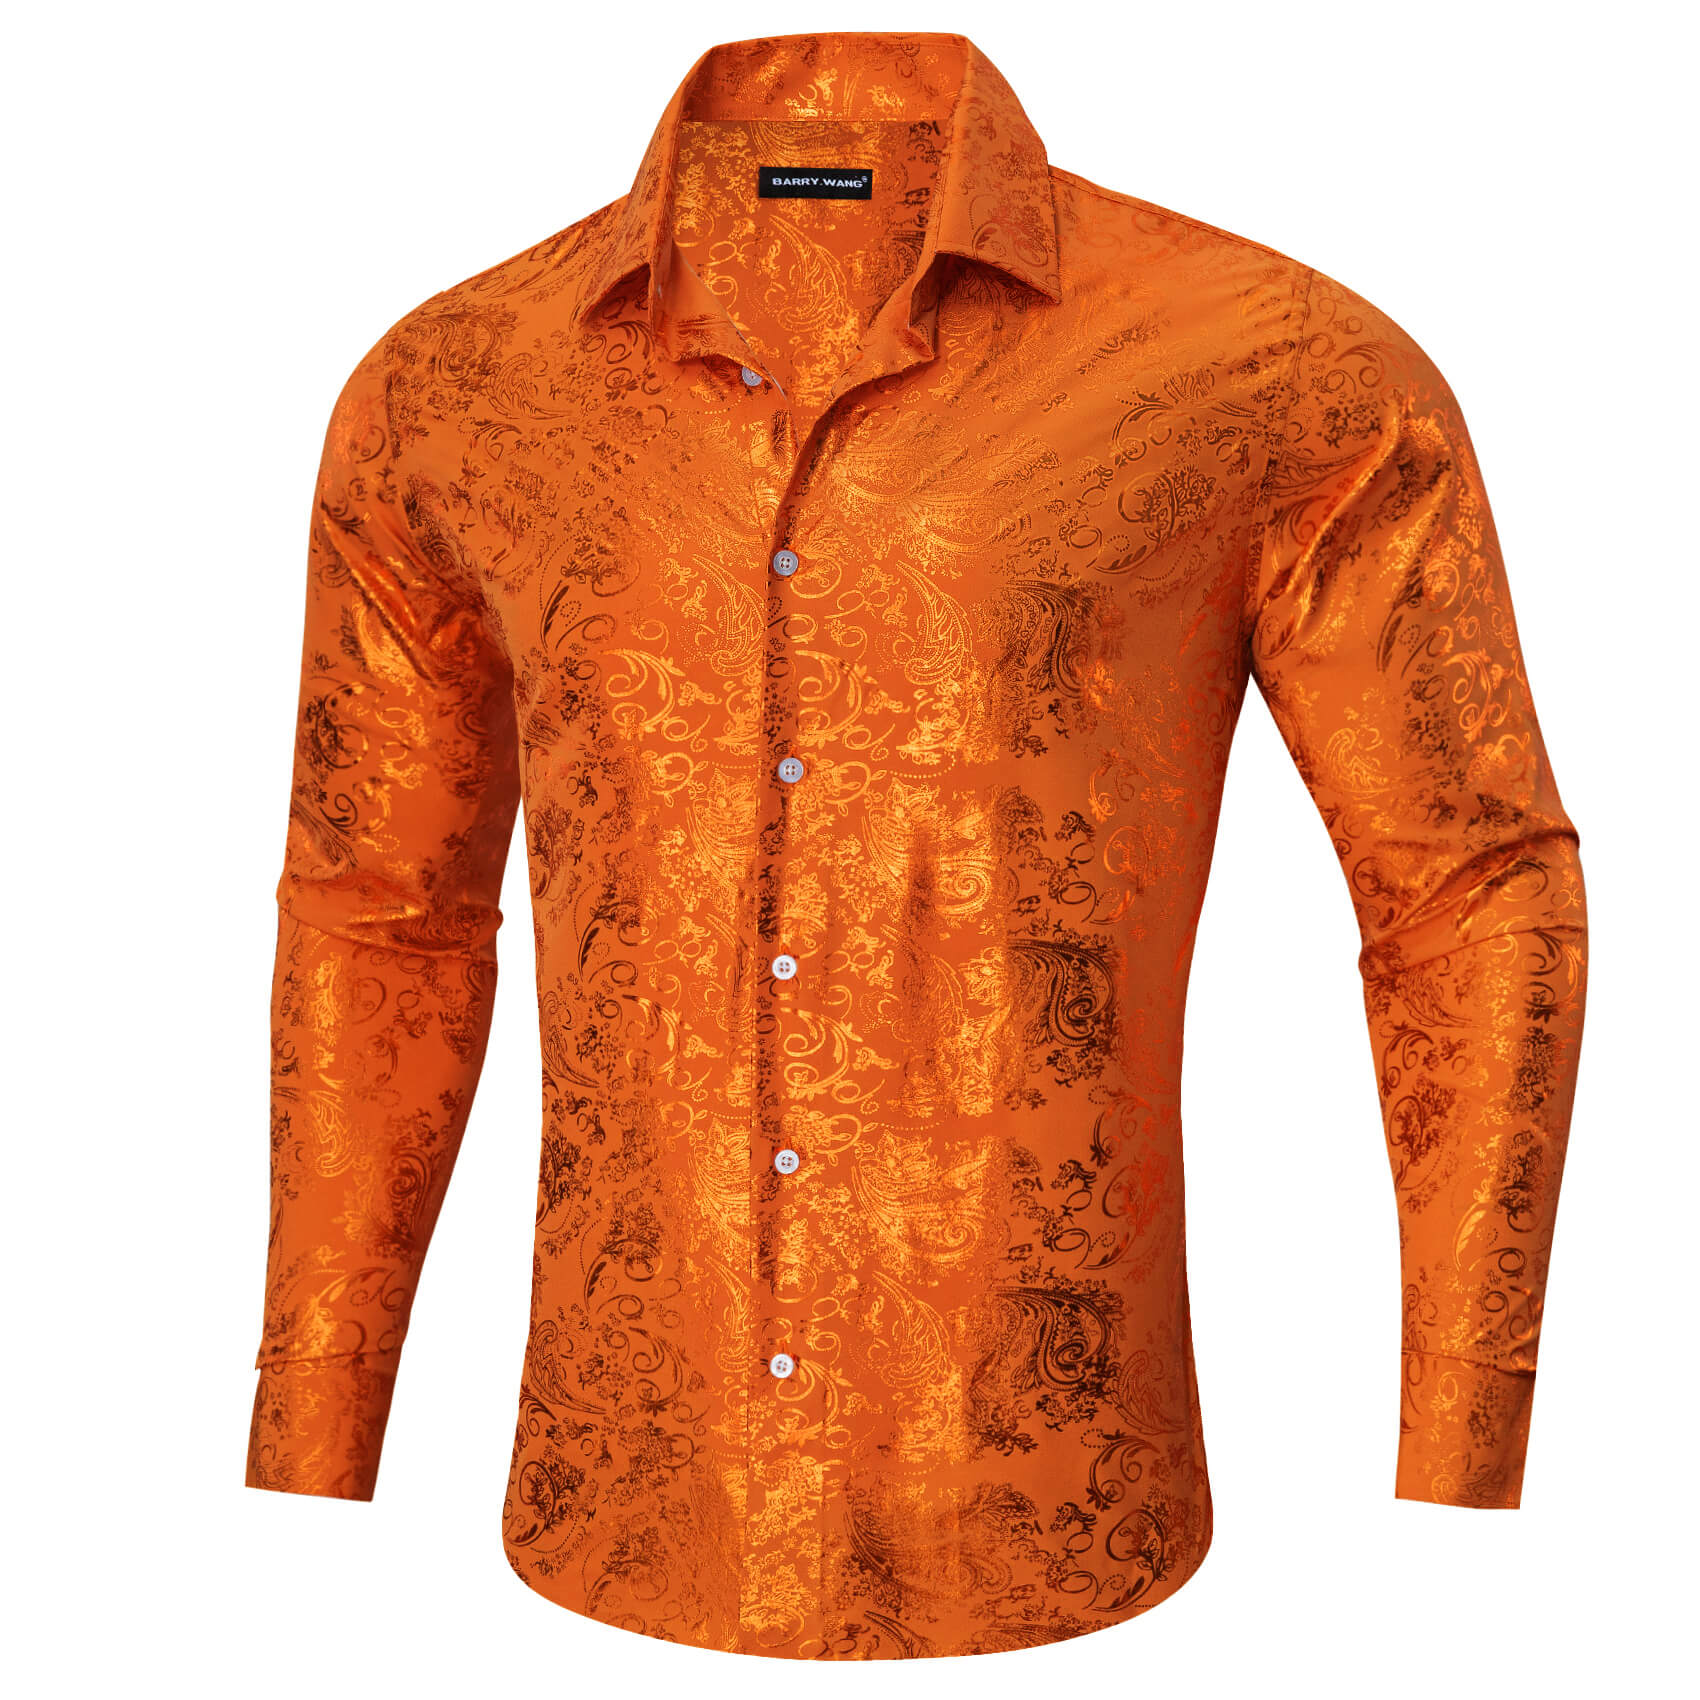 Barry.wang Buttoned Down Shirt Floral Fire Orange Men's Silk Shirt